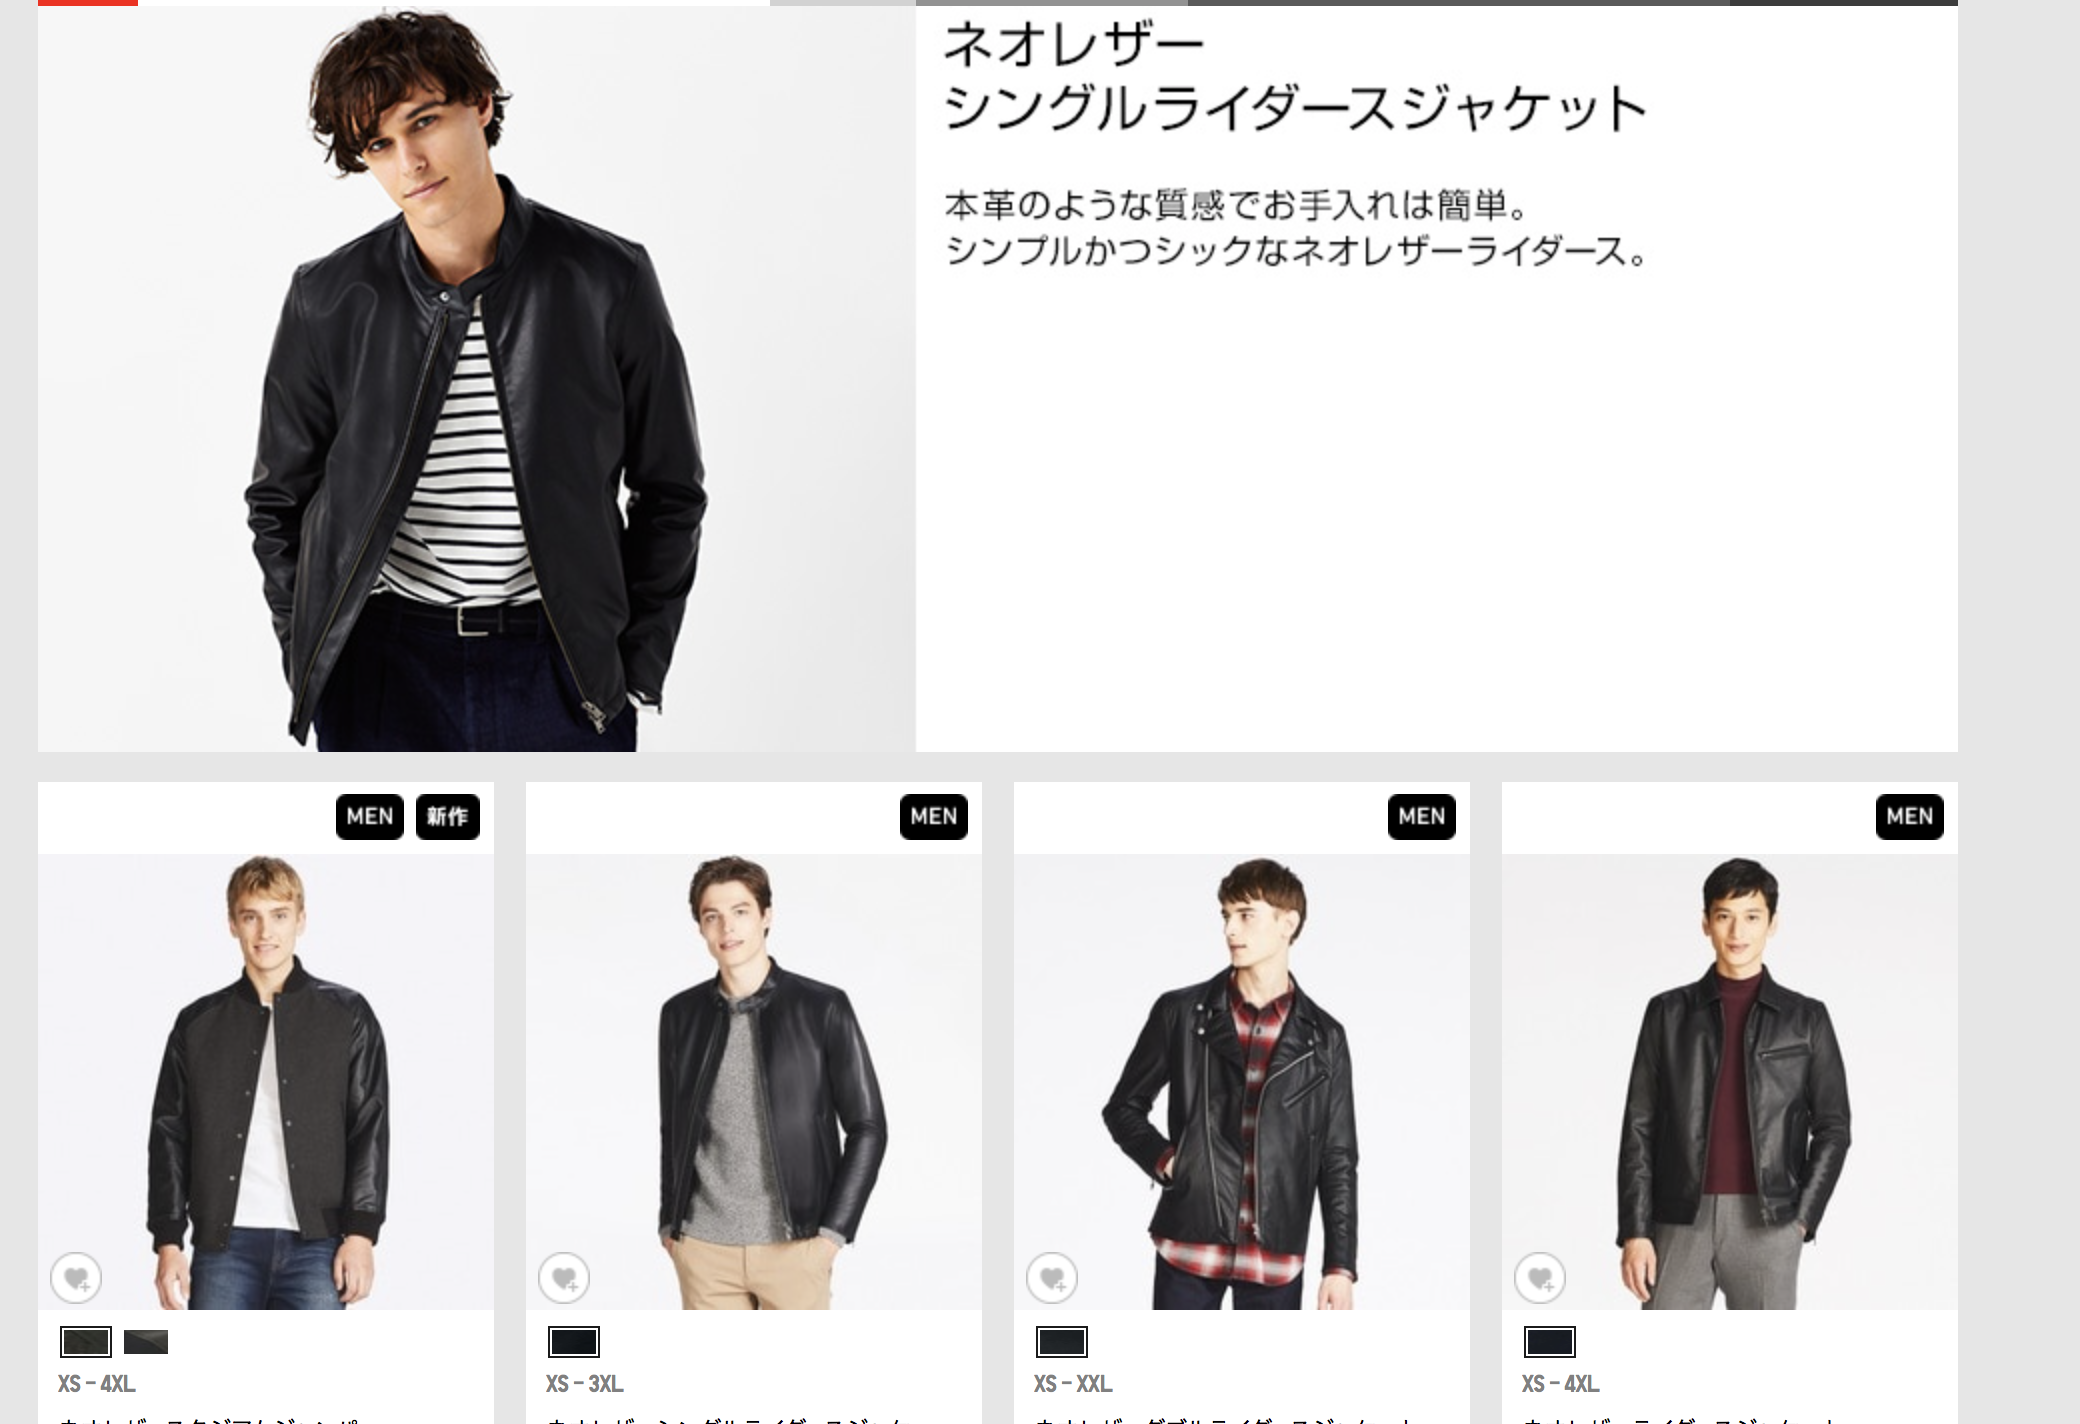 ユニクロのネオレザーダブルライダースジャケットを3万円のブランド品 